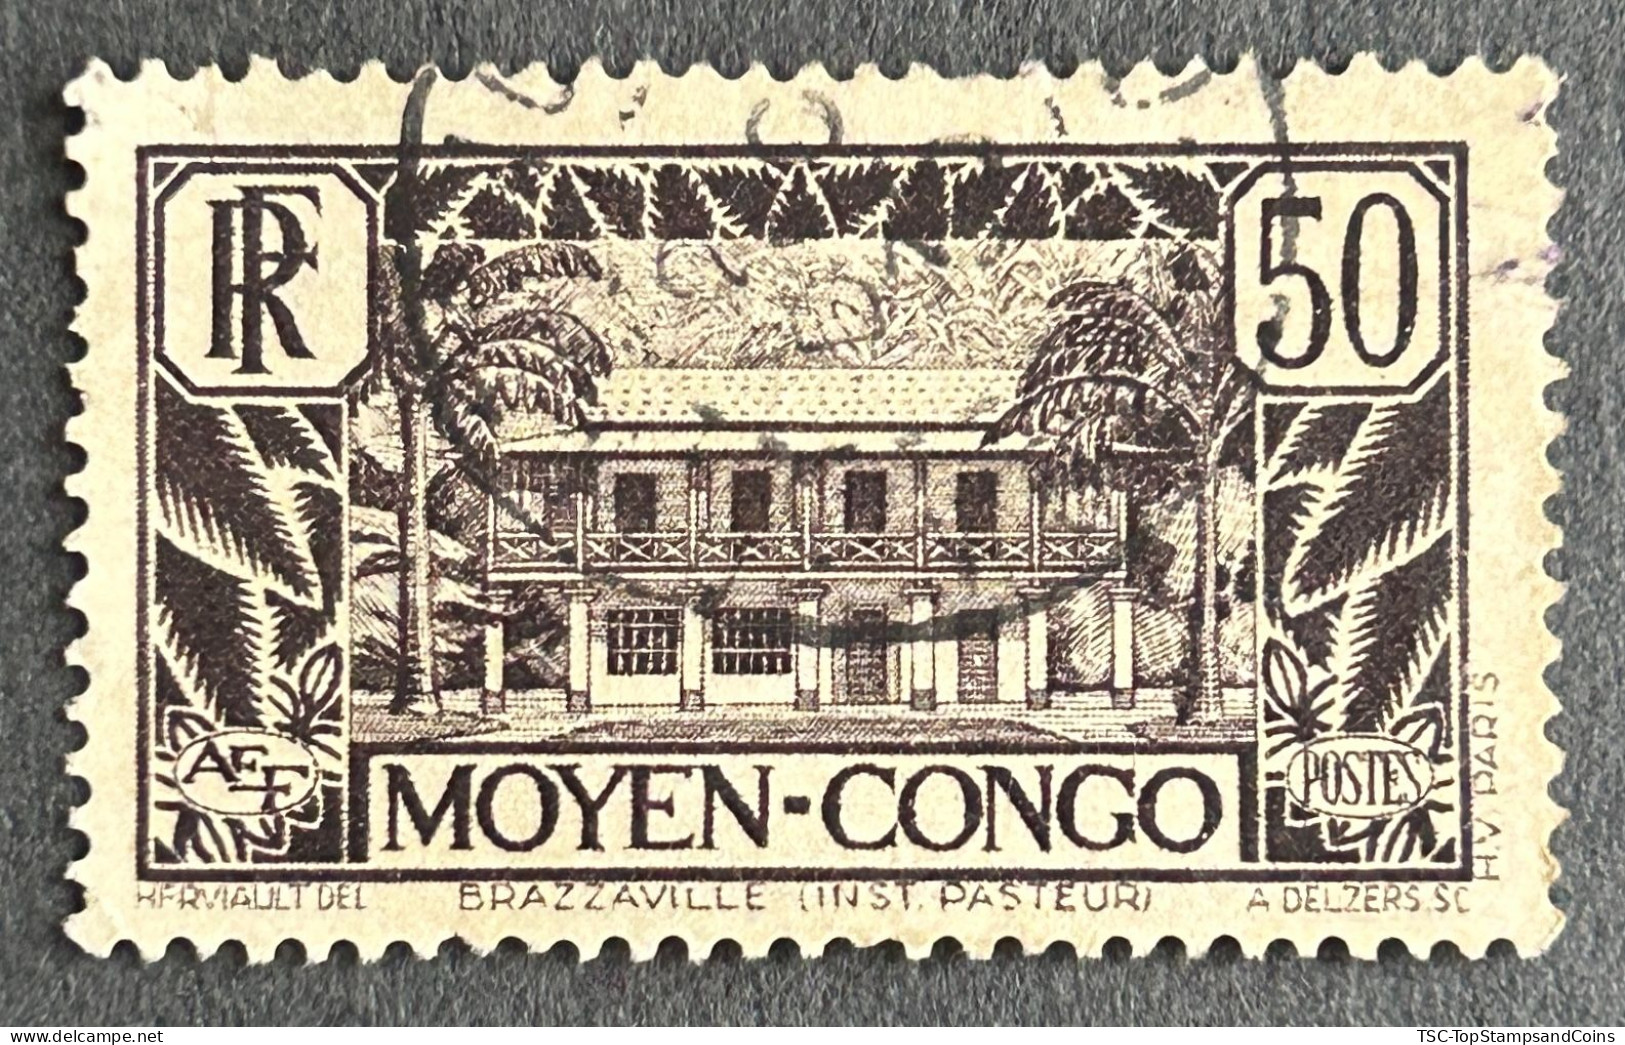 FRCG124U5 - Brazzaville - Pasteur Institute - 50 C Used Stamp - Middle Congo - 1933 - Usati